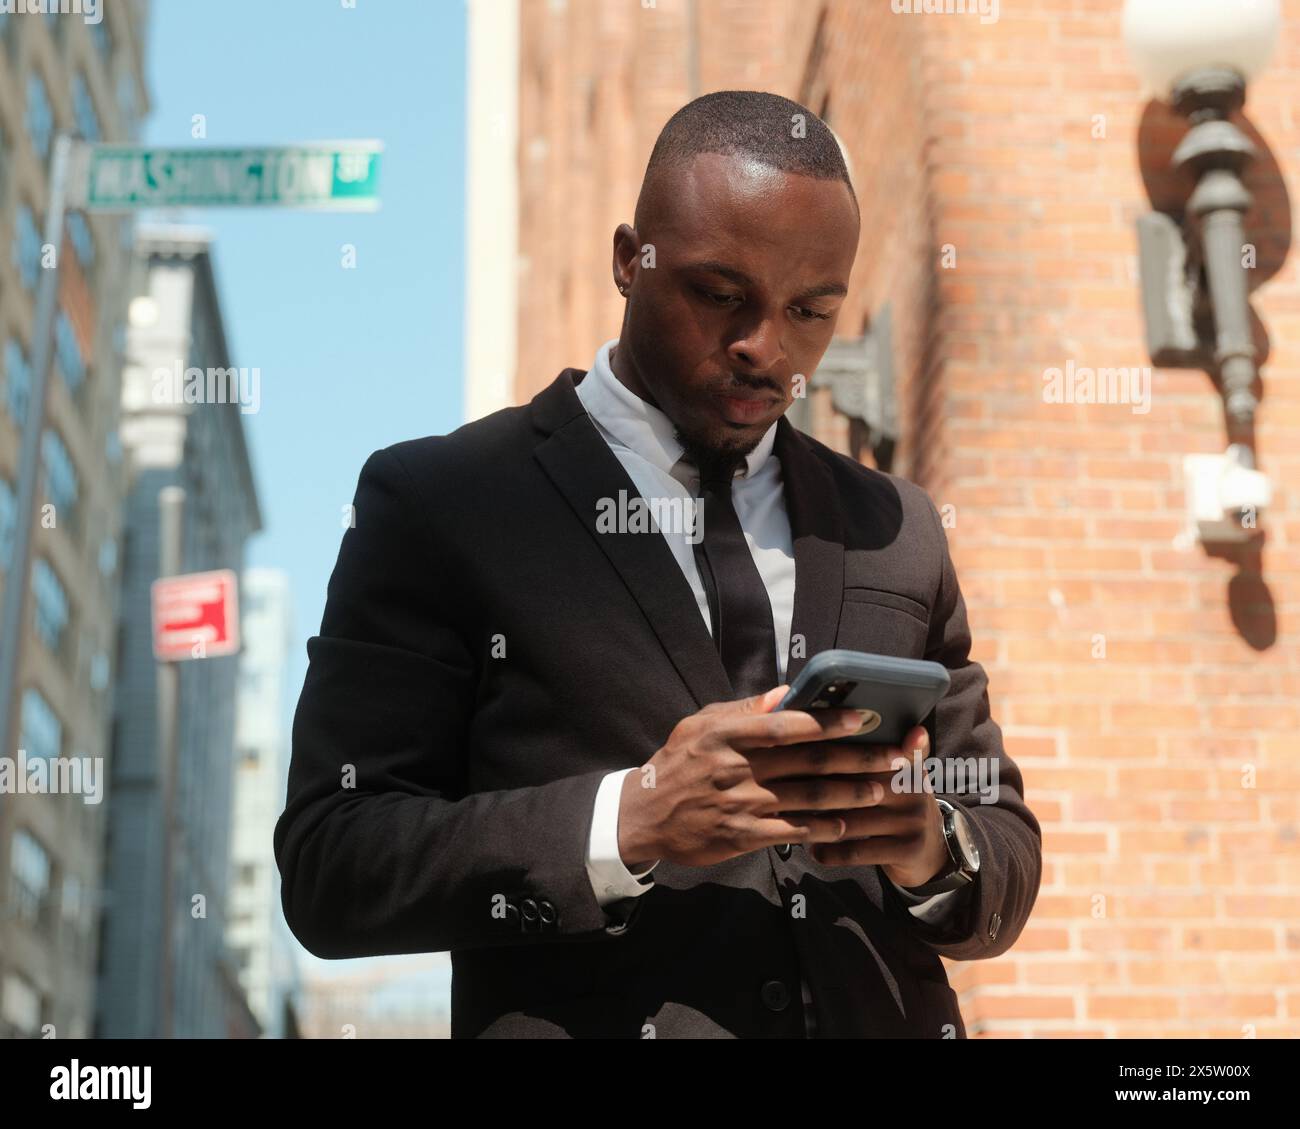 USA, New York City, uomo in tuta che guarda lo smartphone sul marciapiede Foto Stock